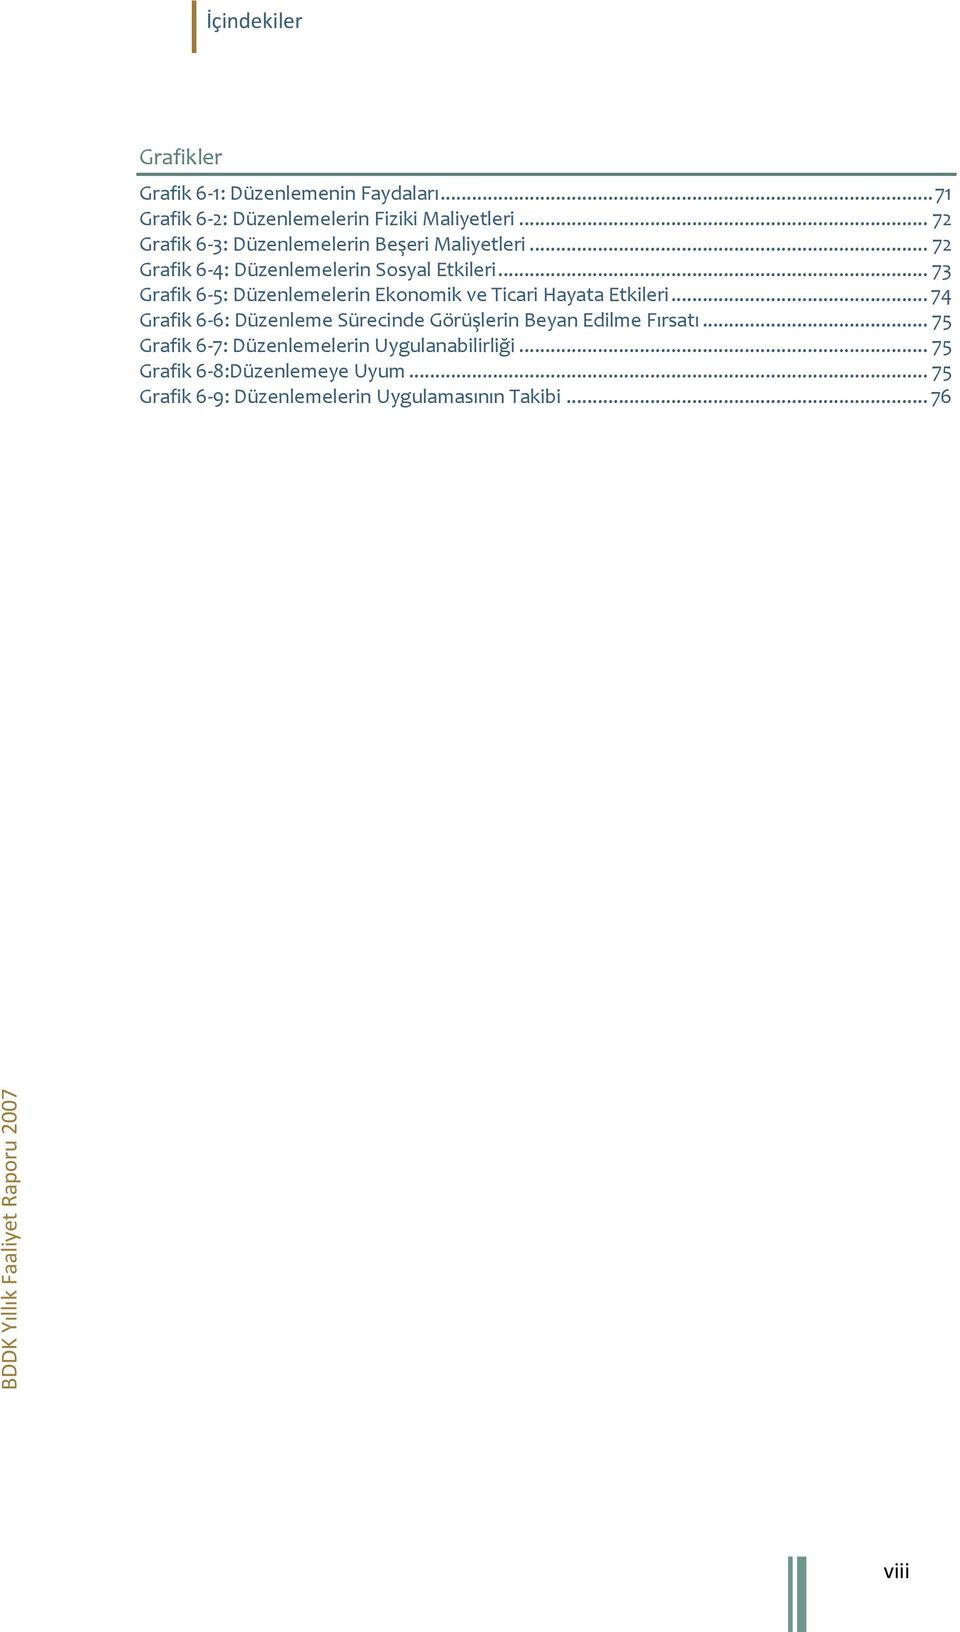 .. 73 Grafik 6-5: Düzenlemelerin Ekonomik ve Ticari Hayata Etkileri.